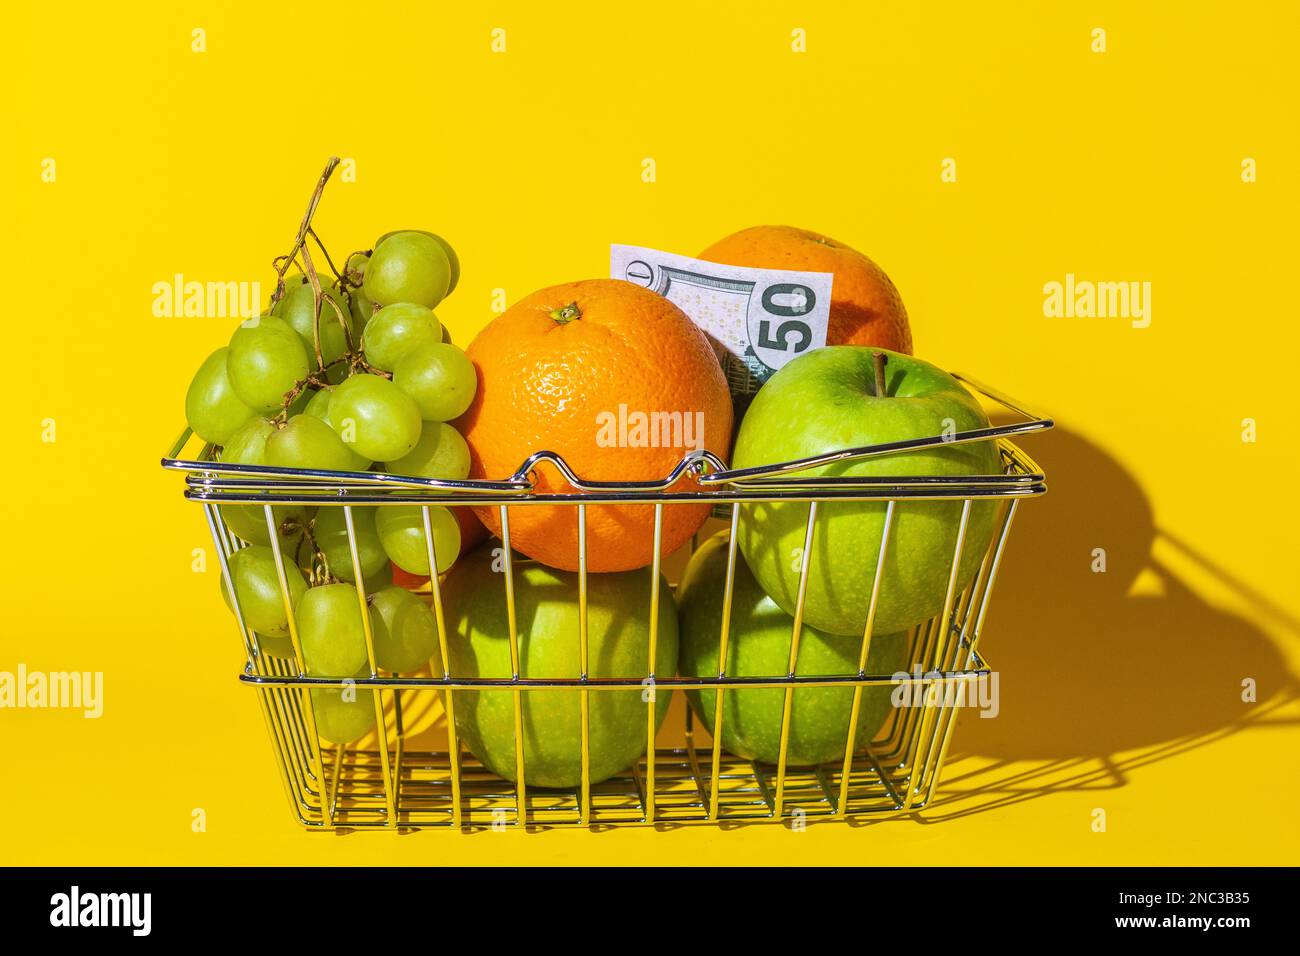 cestino supermercato carrello con frutta e dollari, frutta per cibo e denaro, carta rotonda multicolore, si trovano in un cestino sulla superficie del giallo Foto Stock